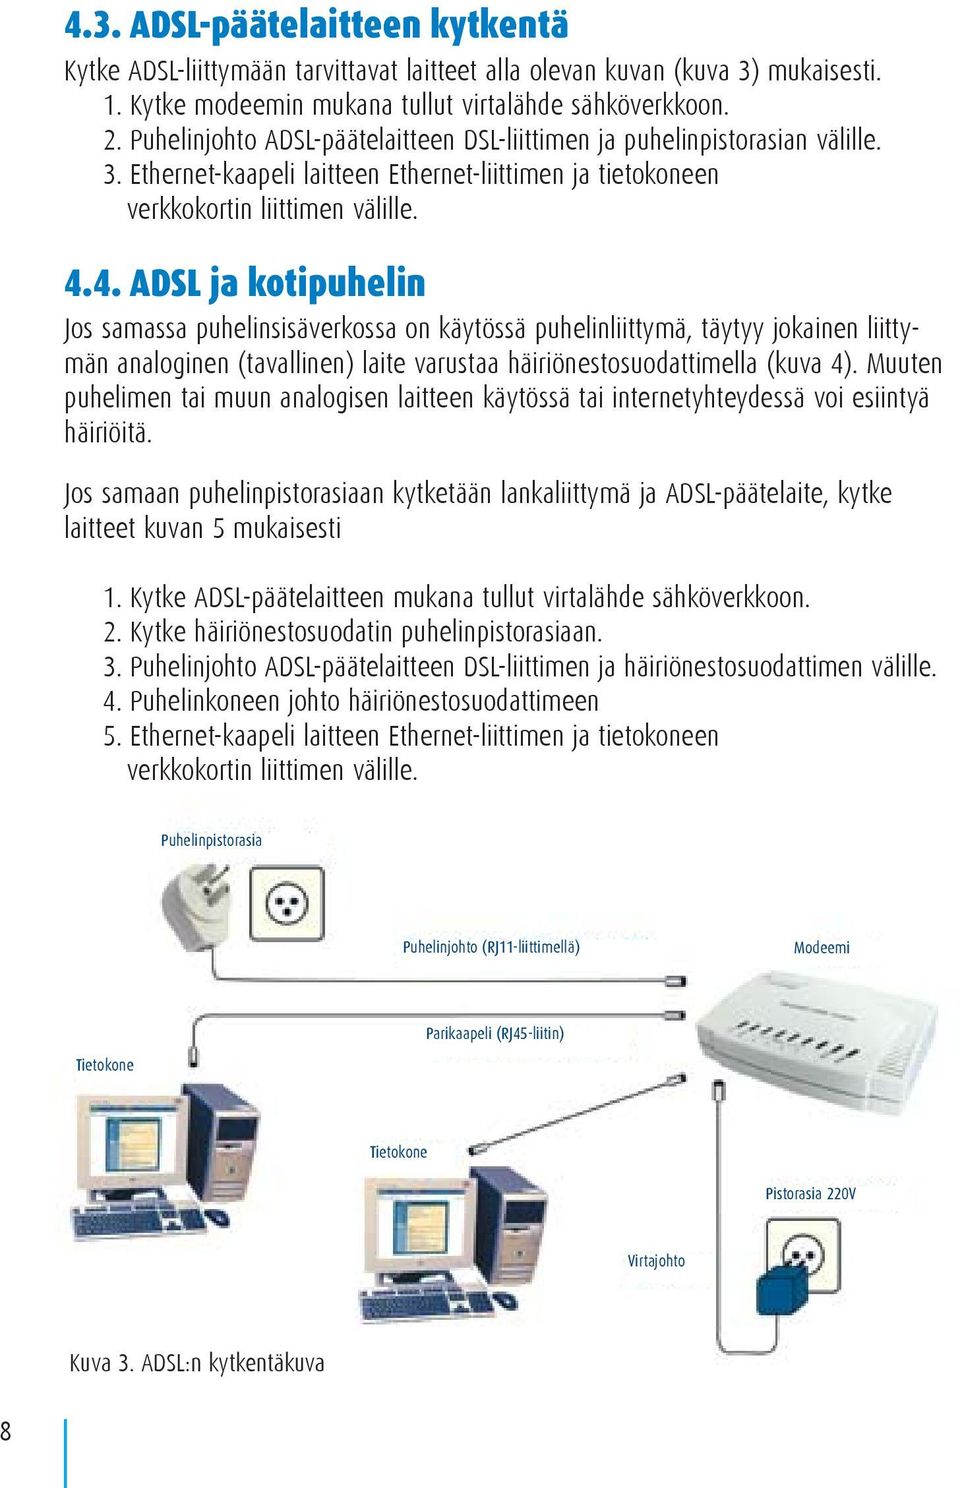 4. ADSL ja kotipuhelin Jos samassa puhelinsisäverkossa on käytössä puhelinliittymä, täytyy jokainen liittymän analoginen (tavallinen) laite varustaa häiriönestosuodattimella (kuva 4).